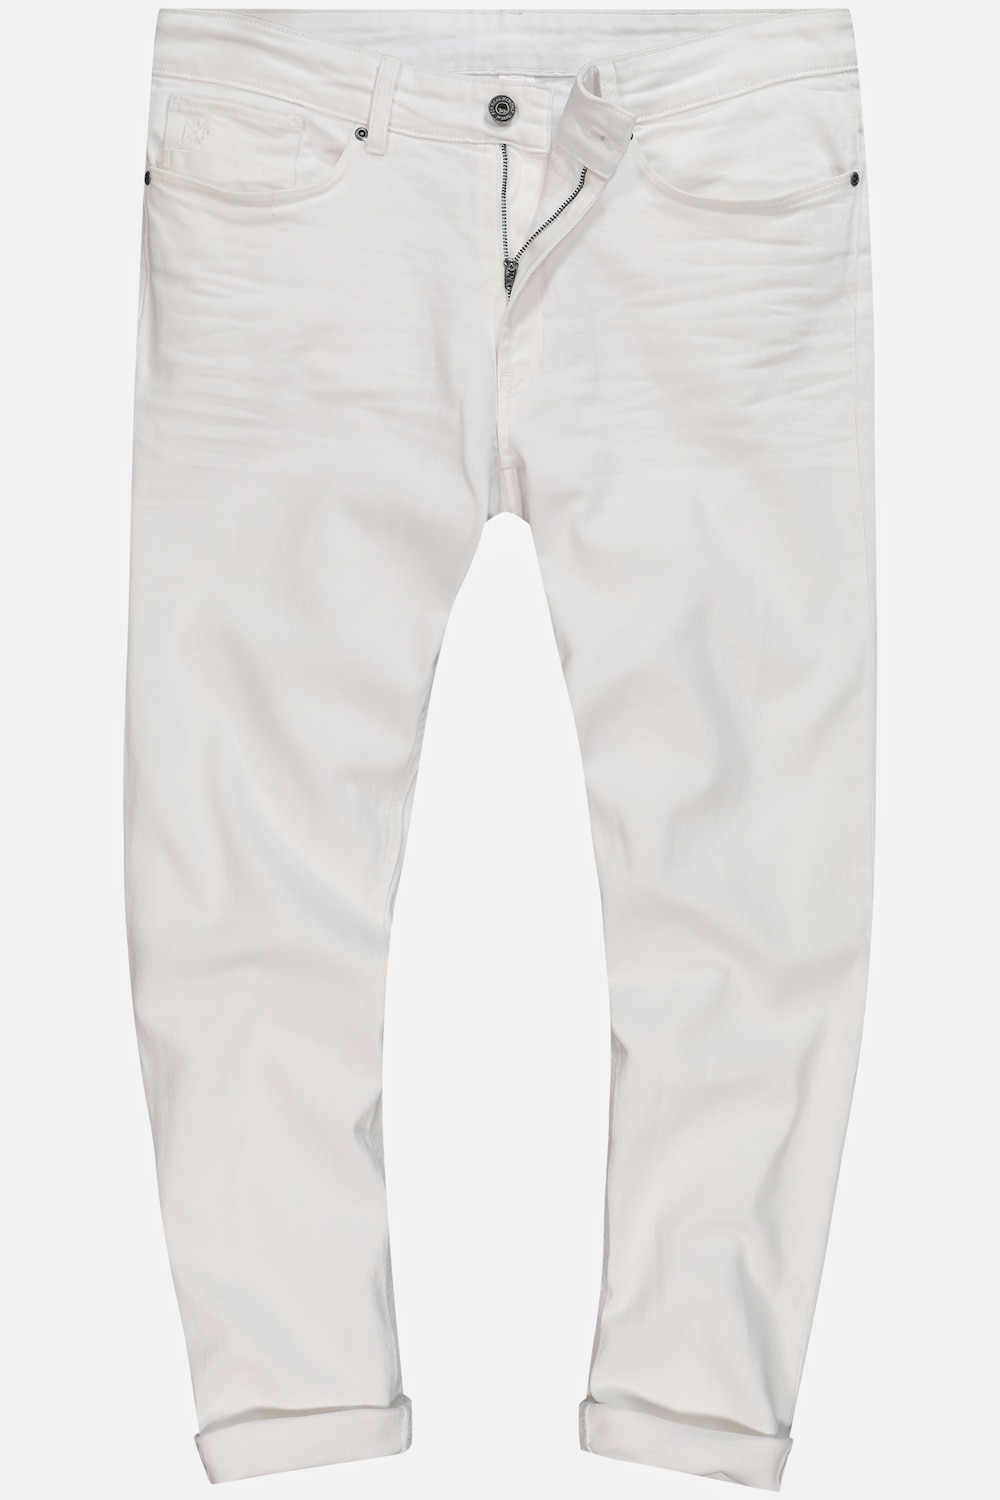 Grote Maten Jeans, Heren, wit, Maat: 110, Katoen, JP1880